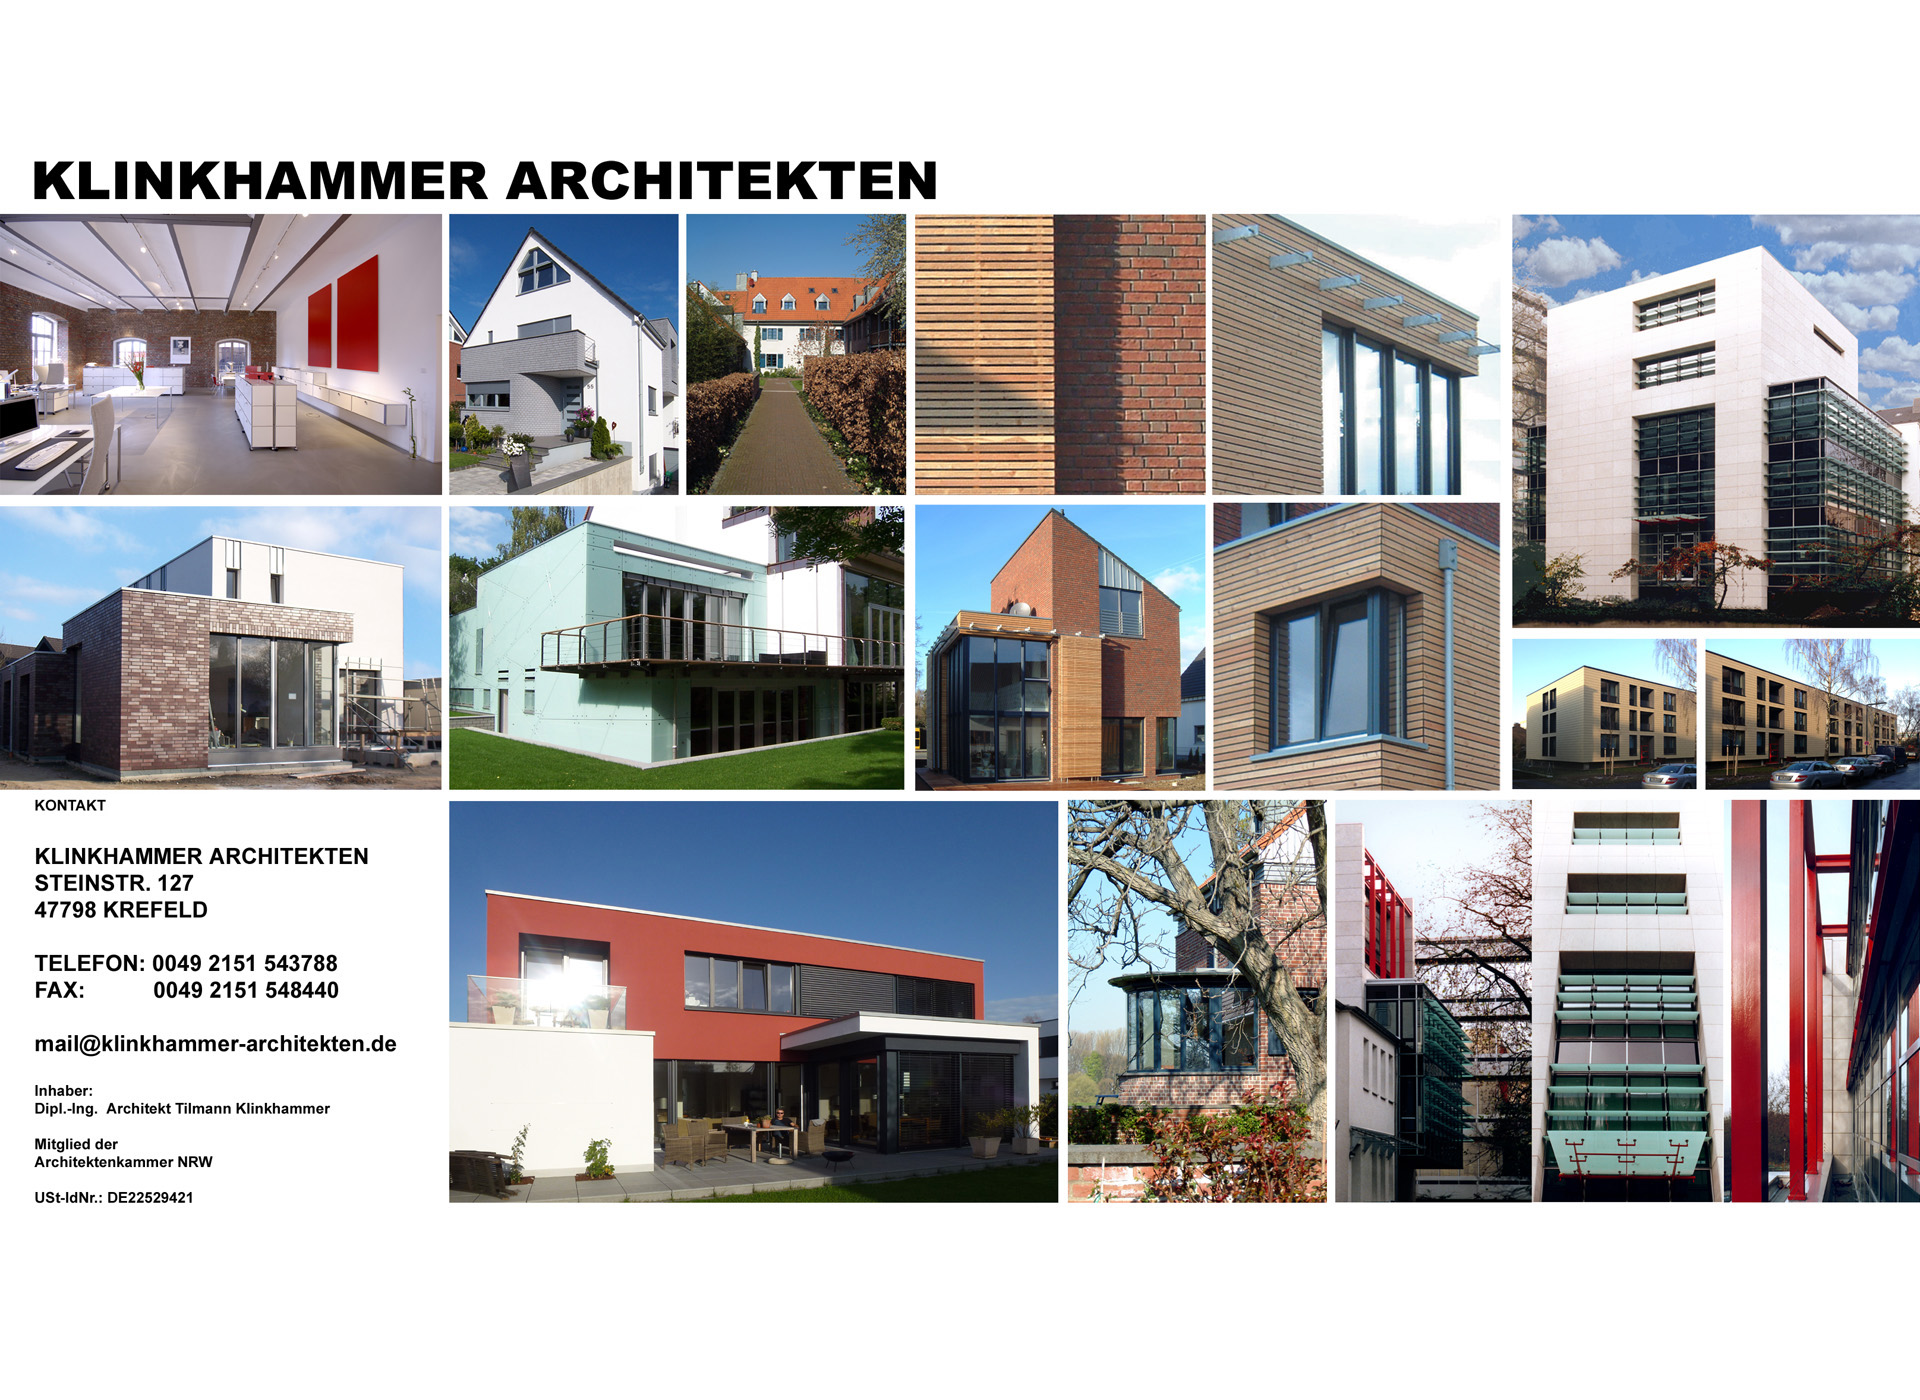 Klinkhammer Architekten